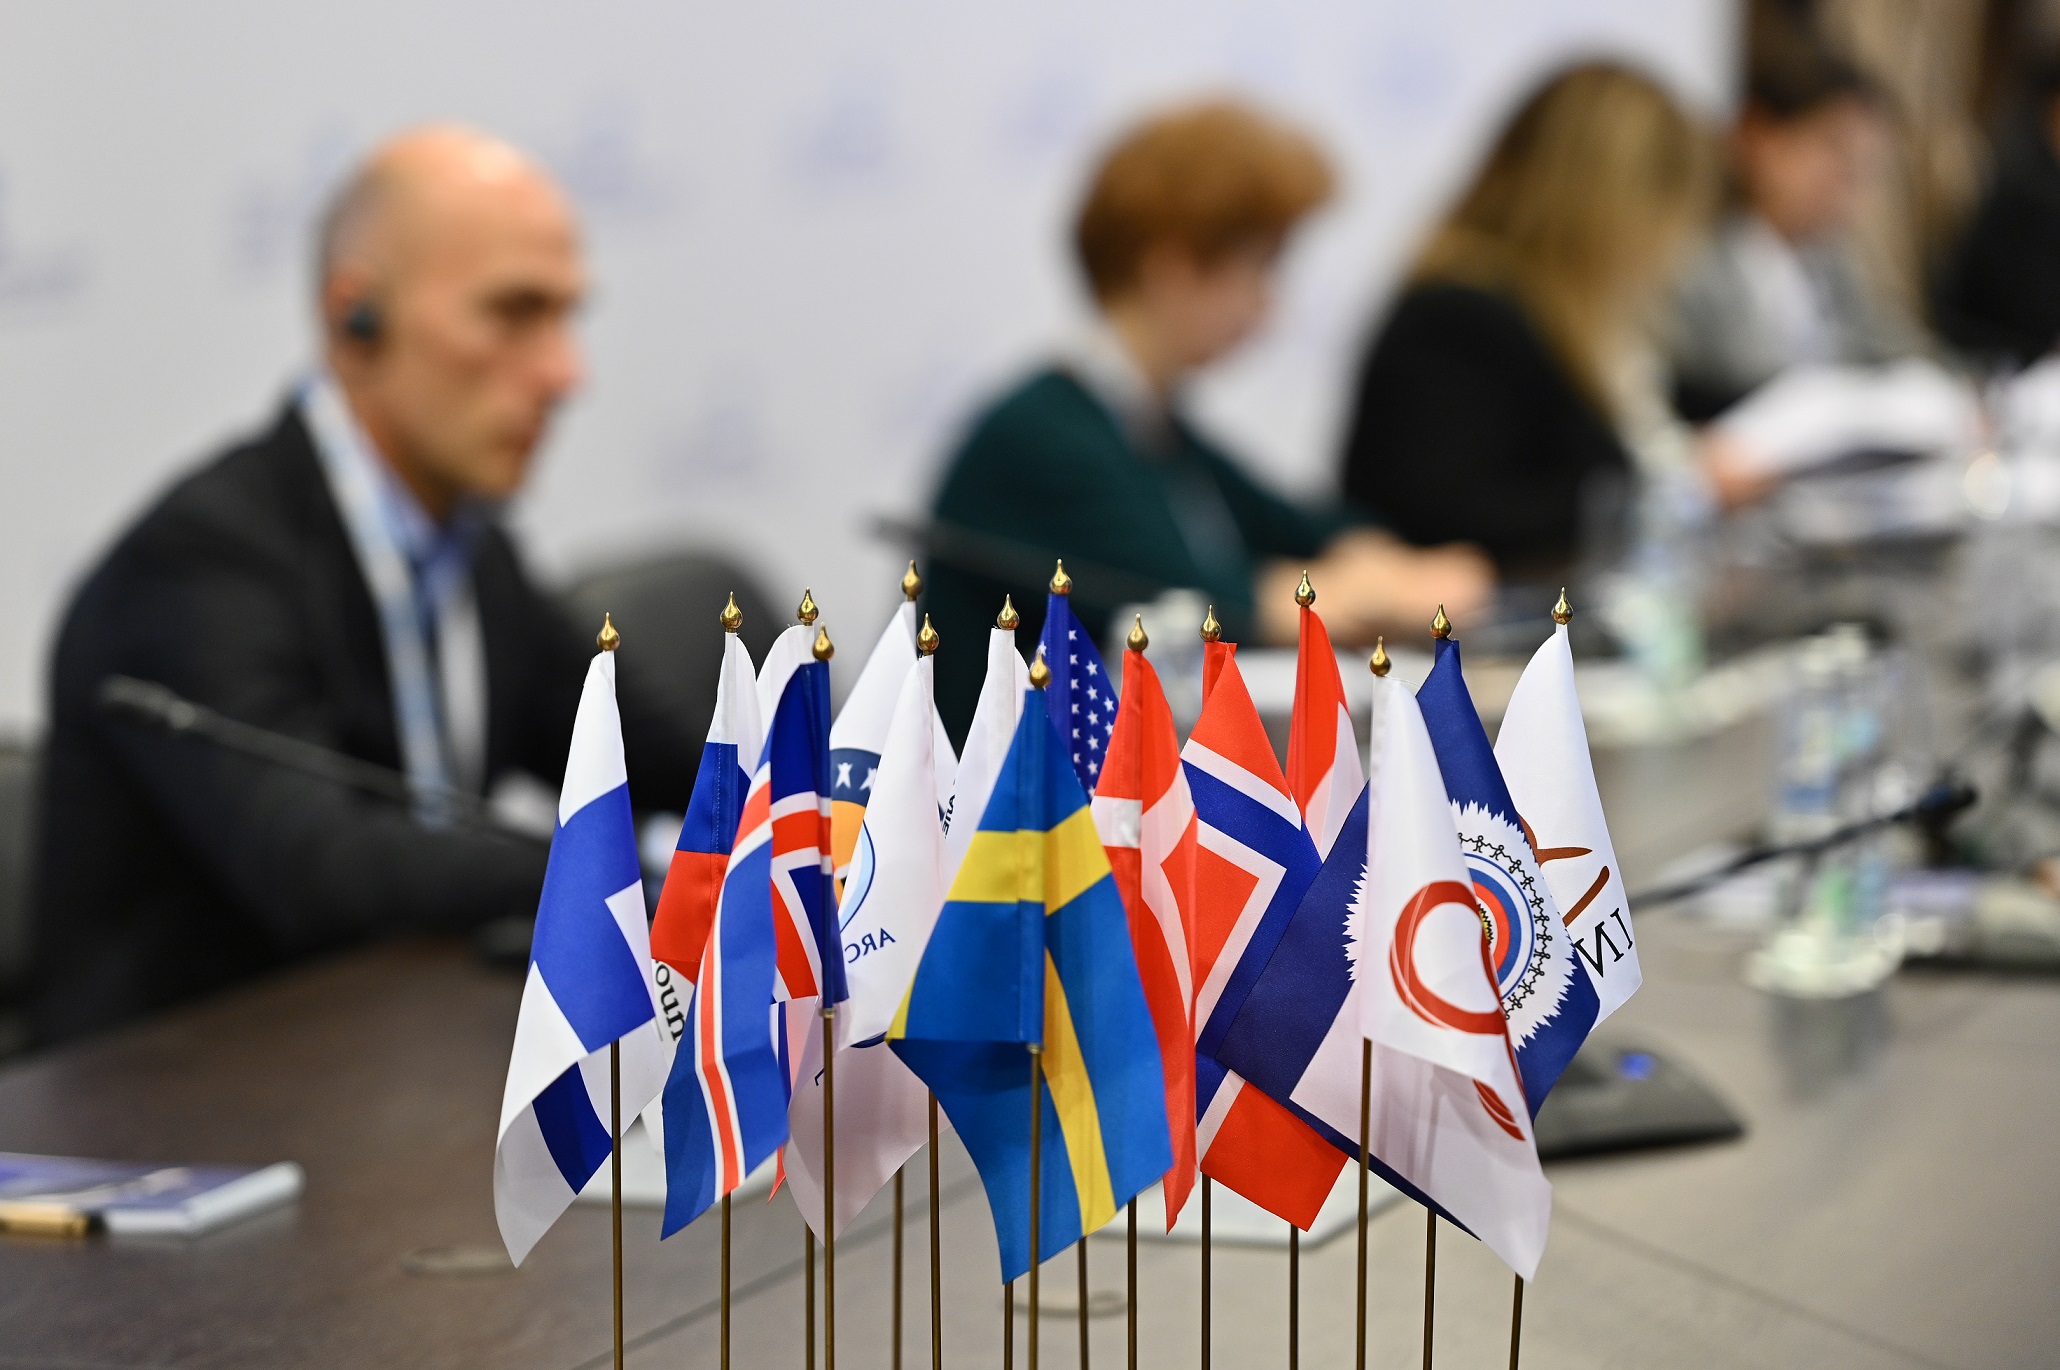 Арктический совет соберется на первое пленарное заседание  под председательством России - фото 1